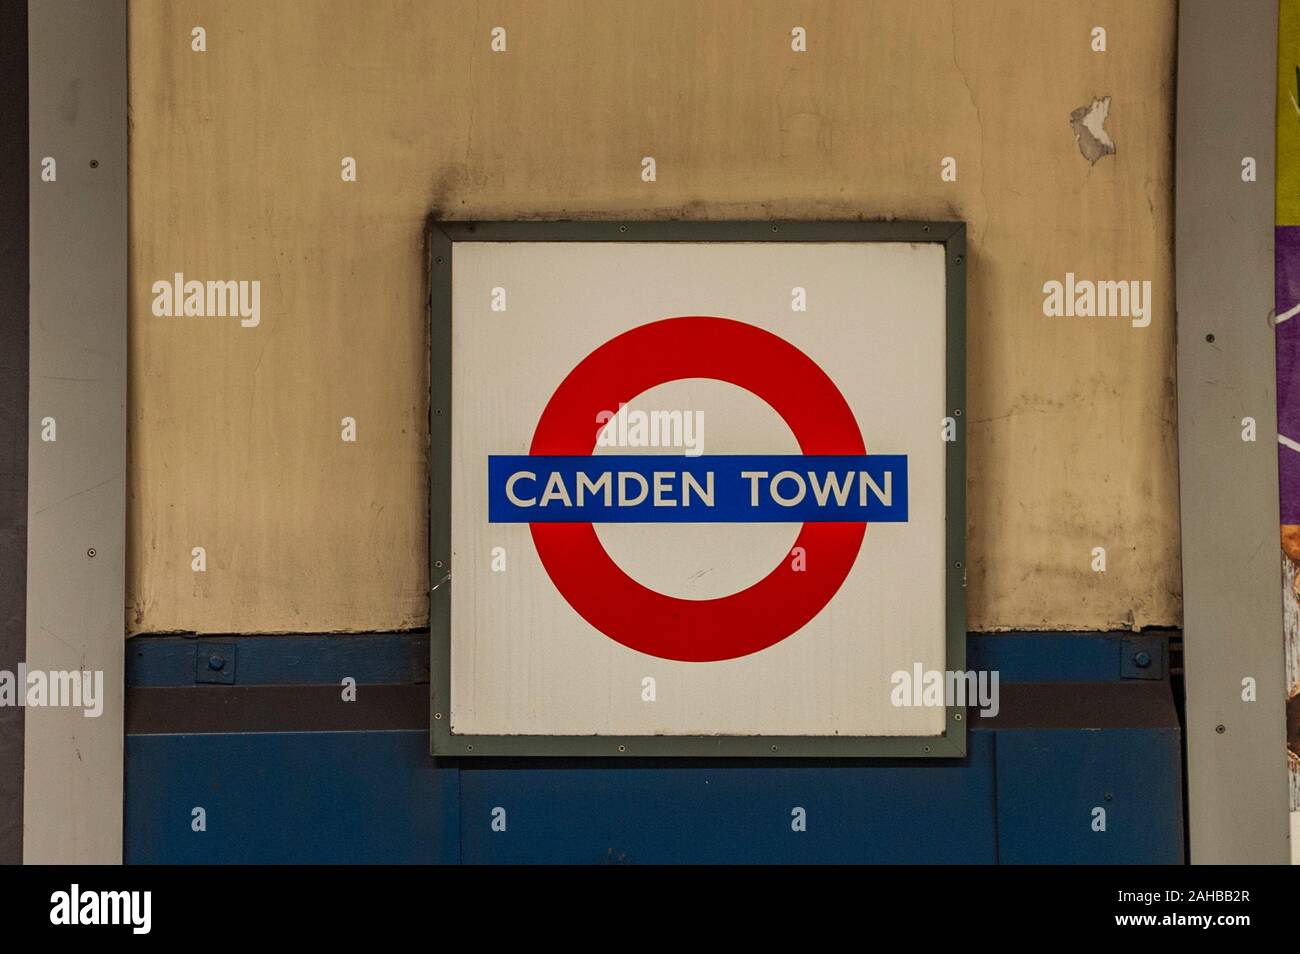 La station de métro Camden Town, London, UK. Banque D'Images